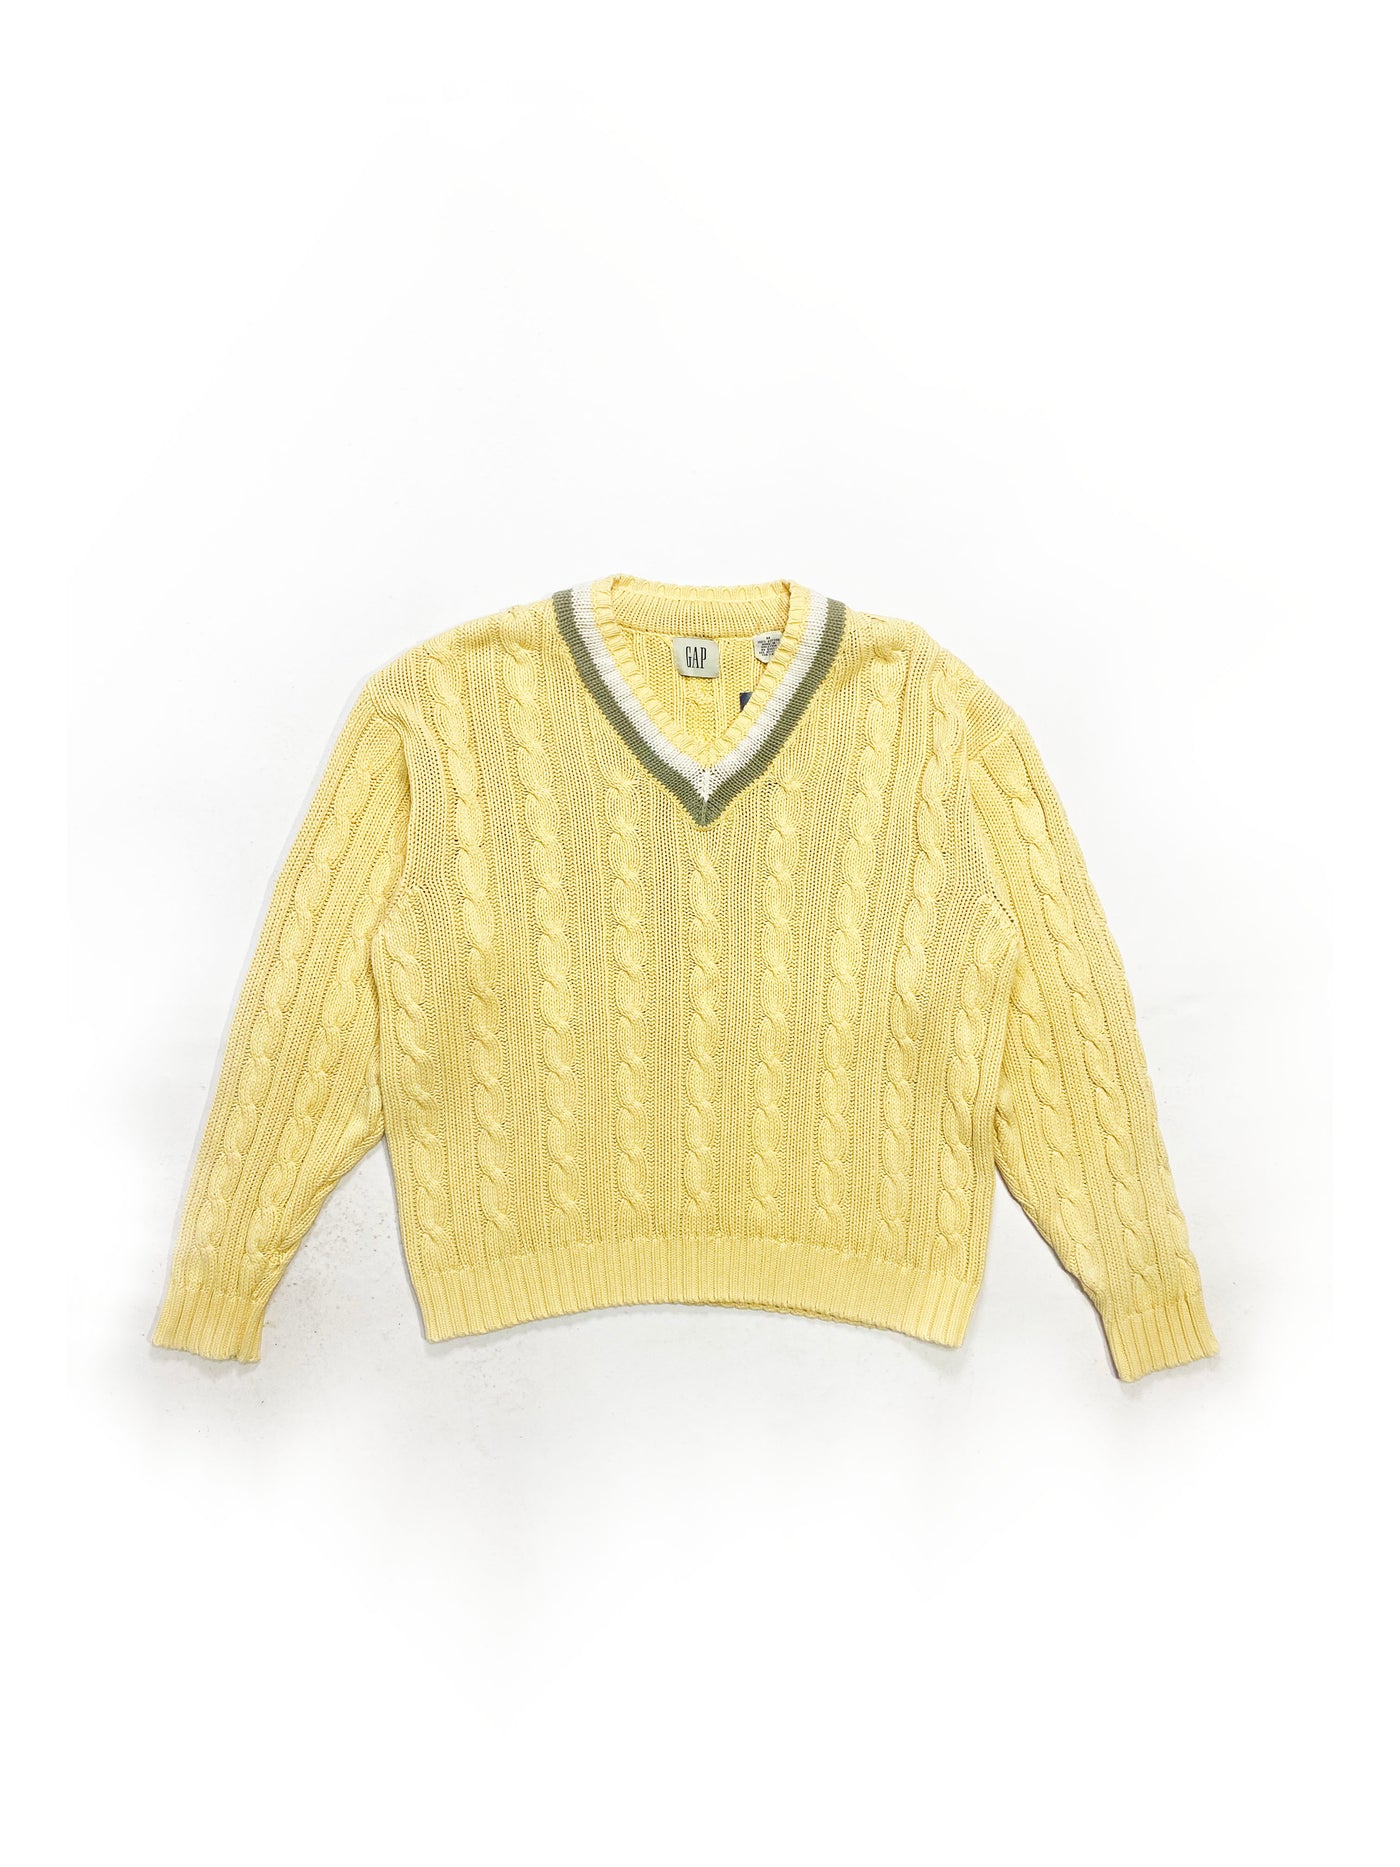 Vintage Gap V-Neck Sweater